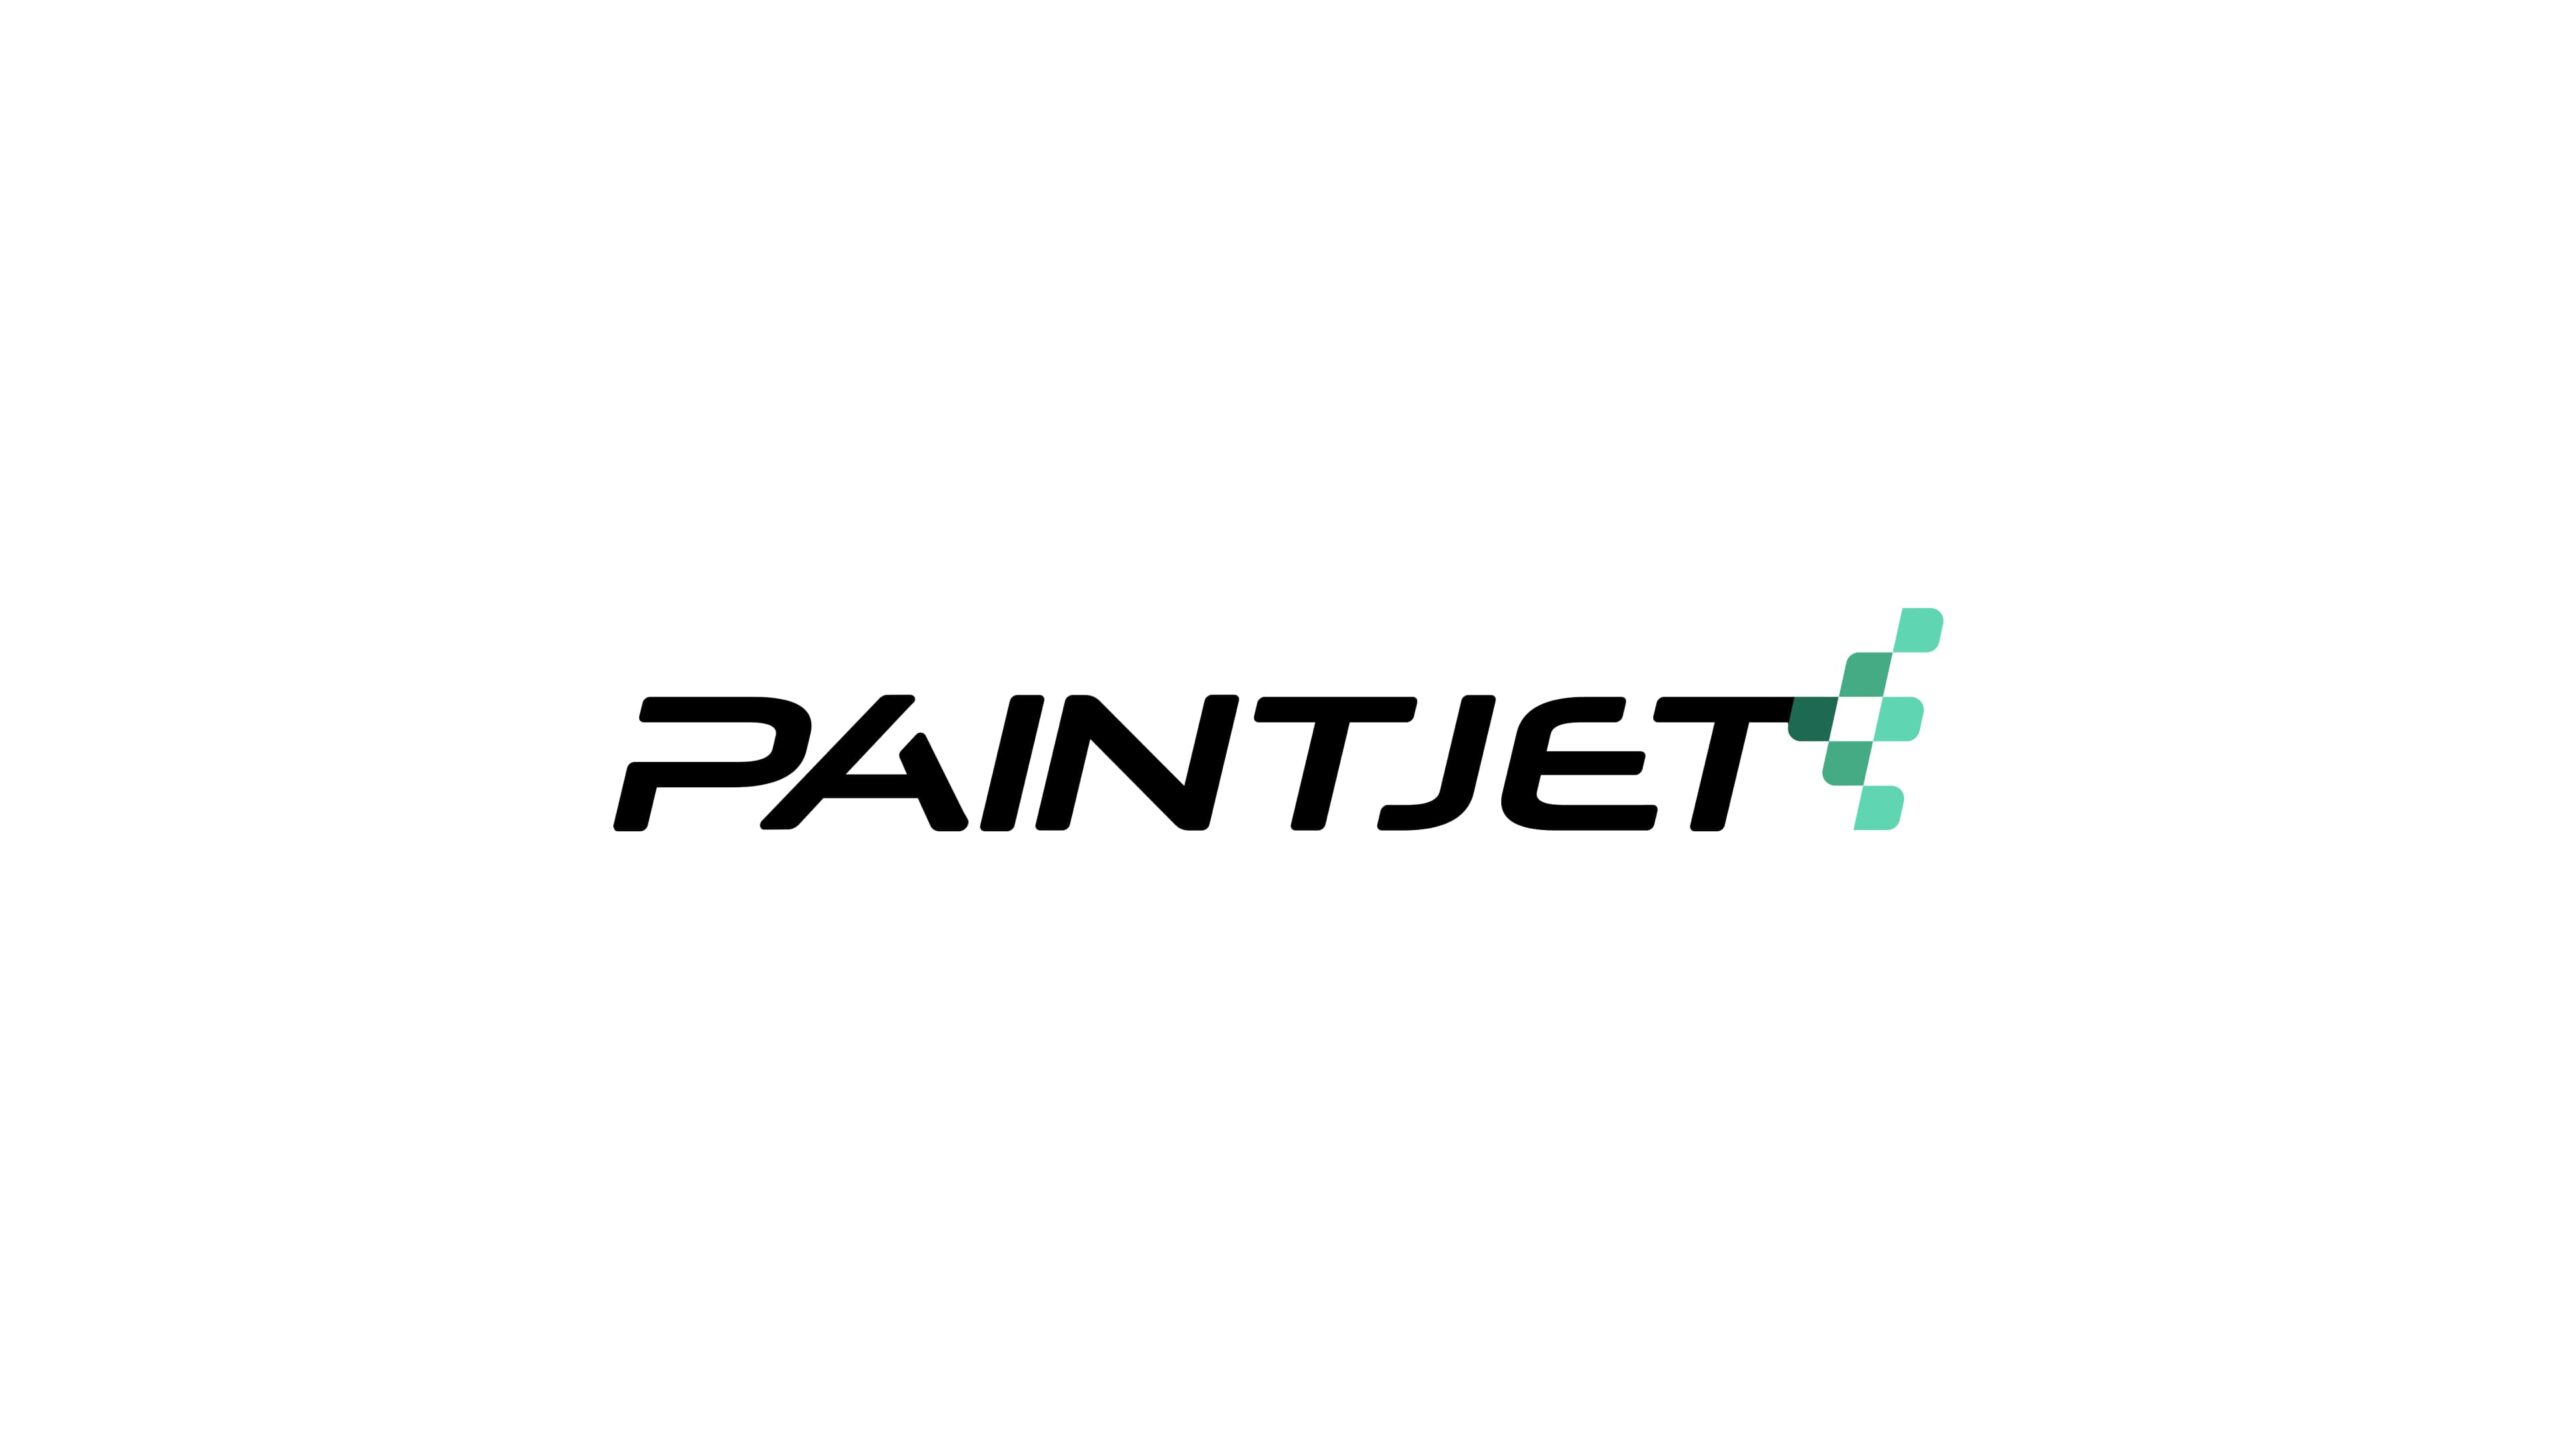 ロボットペイント企業Paintjetが1,000万ドルの資金調達